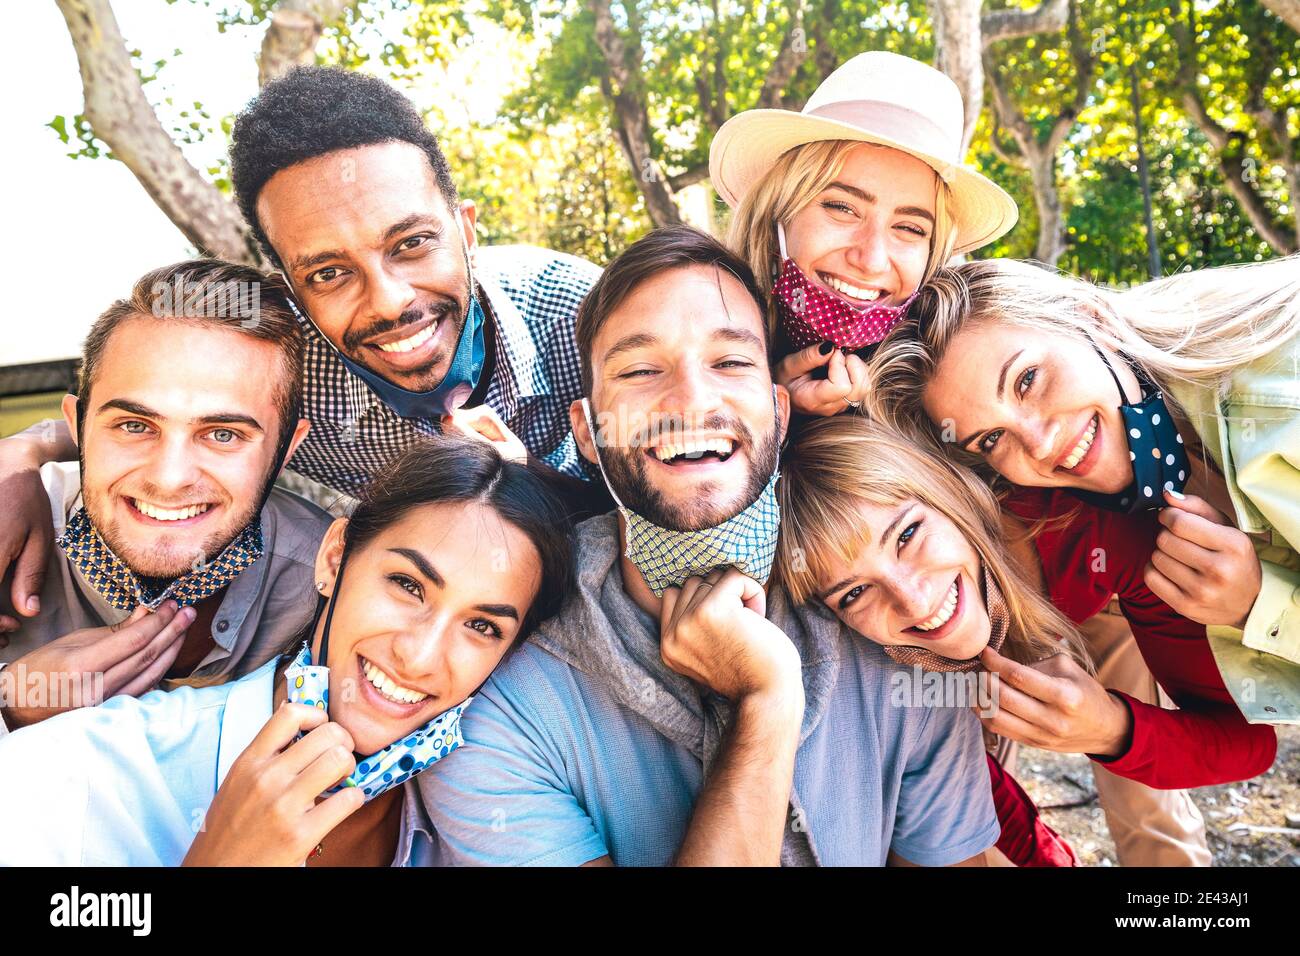 Amici multirazziali che prendono selfie felice con maschere aperte dopo riapertura di lockdown - nuovo concetto di amicizia normale con i giovani divertirsi Foto Stock